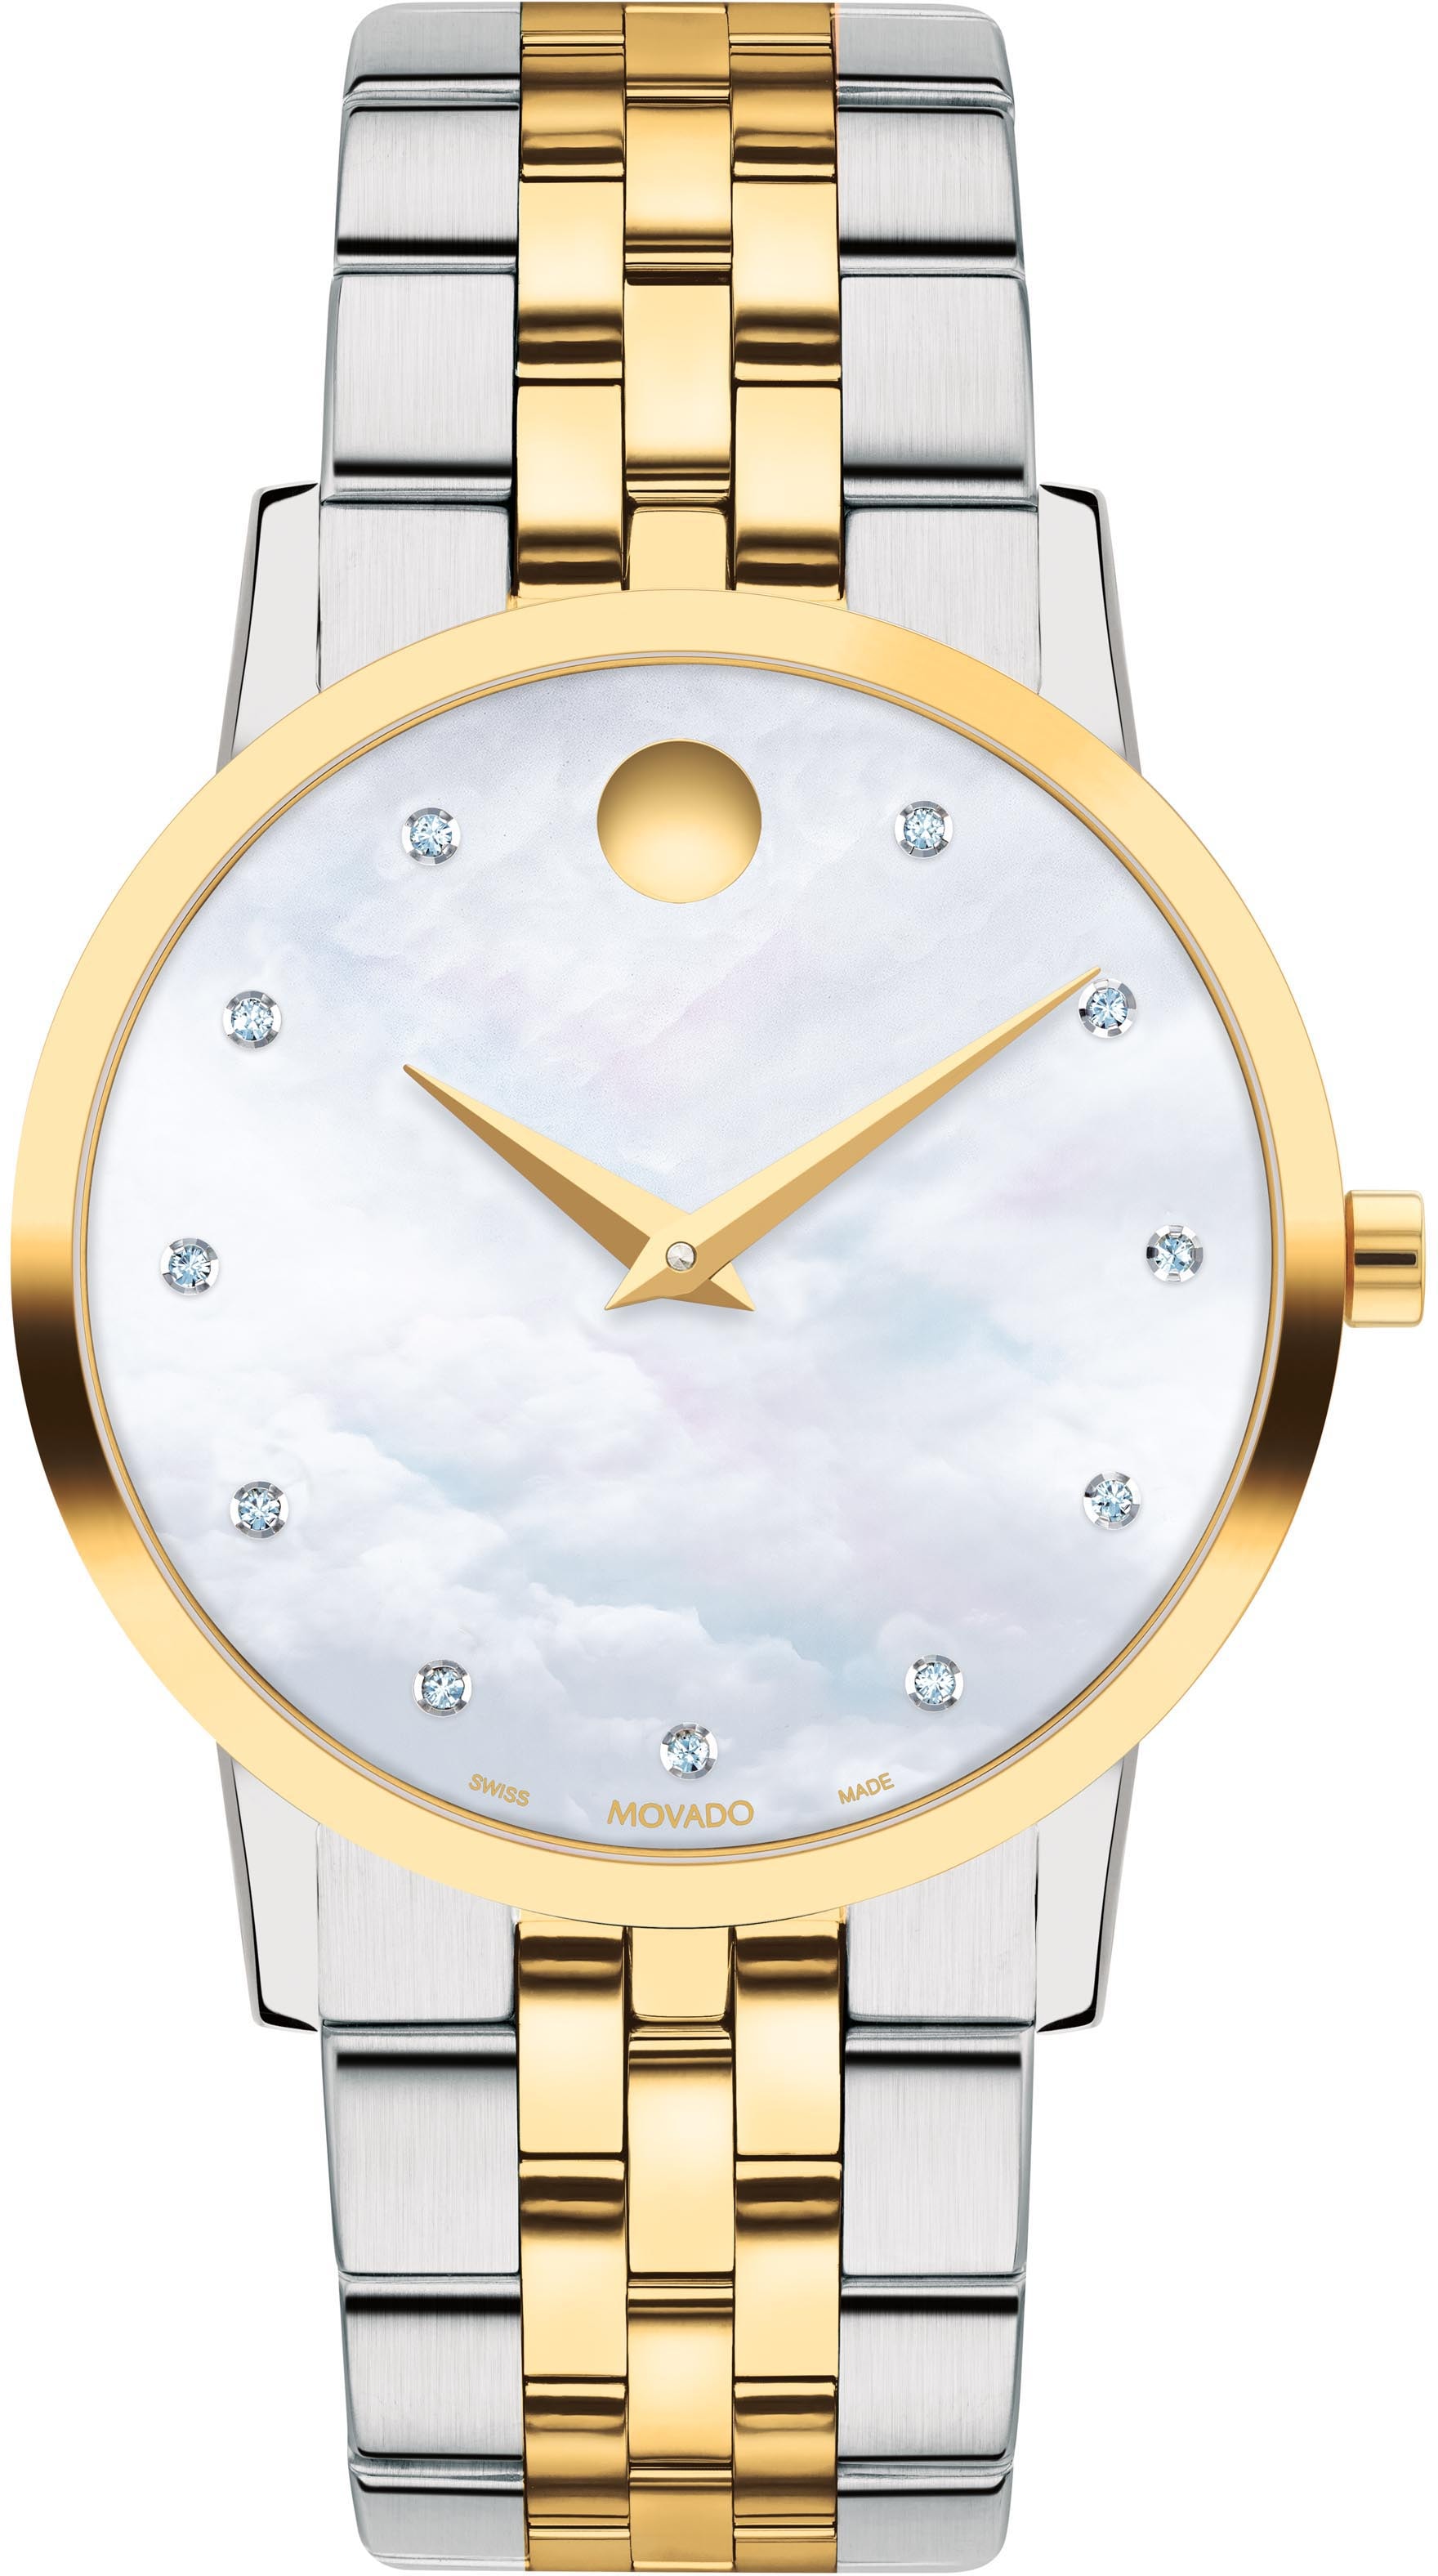 MOVADO Schweizer Uhr »MUSEUM, 0607630«, Quarzuhr, Armbanduhr, Damenuhr, Swiss Made, Diamant-Steine, Perlmutt